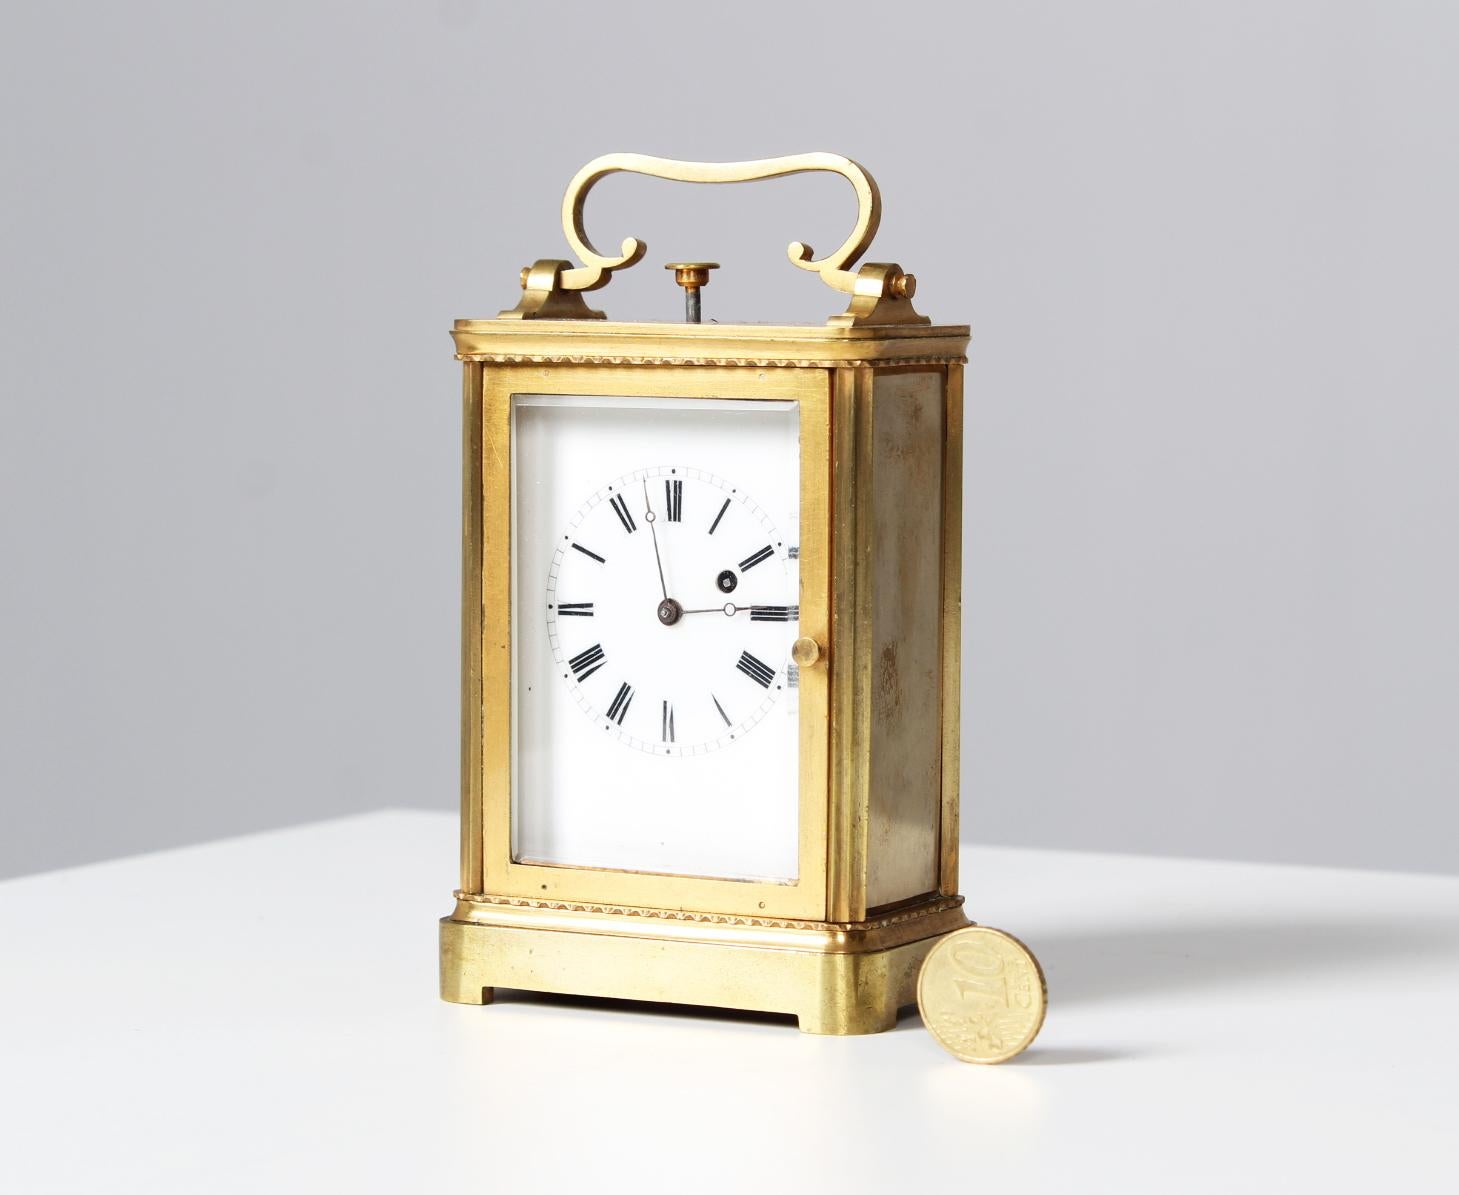 Horloge de voyage avec répétition

France
Laiton
19ème siècle

Dimensions : H x L x P : 11 x 7,5 x 4,5 cm

Description :
Petite pendule de voyage, dite pendule d'officier, pendule de calèche ou pendulette de voyage.

Boîtier en laiton à